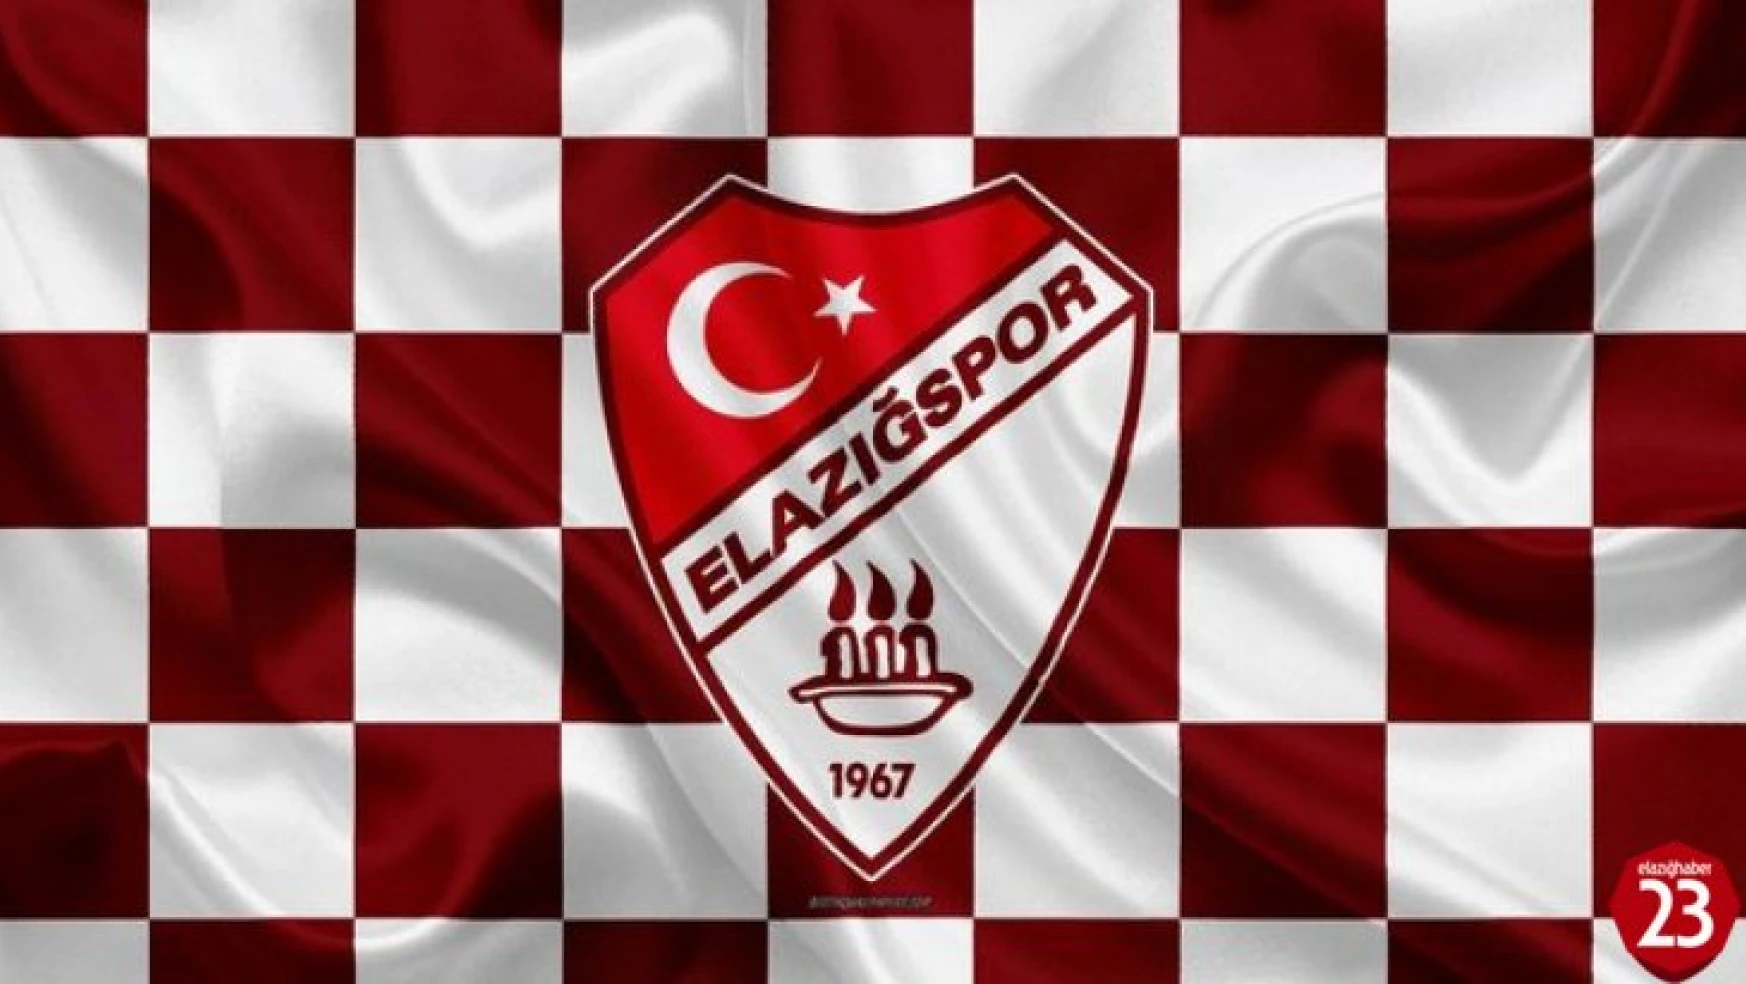 Elazığspor'da Transfer Tahtası Açılıyor mu ? Önemli Gelişmeler Yaşanıyor